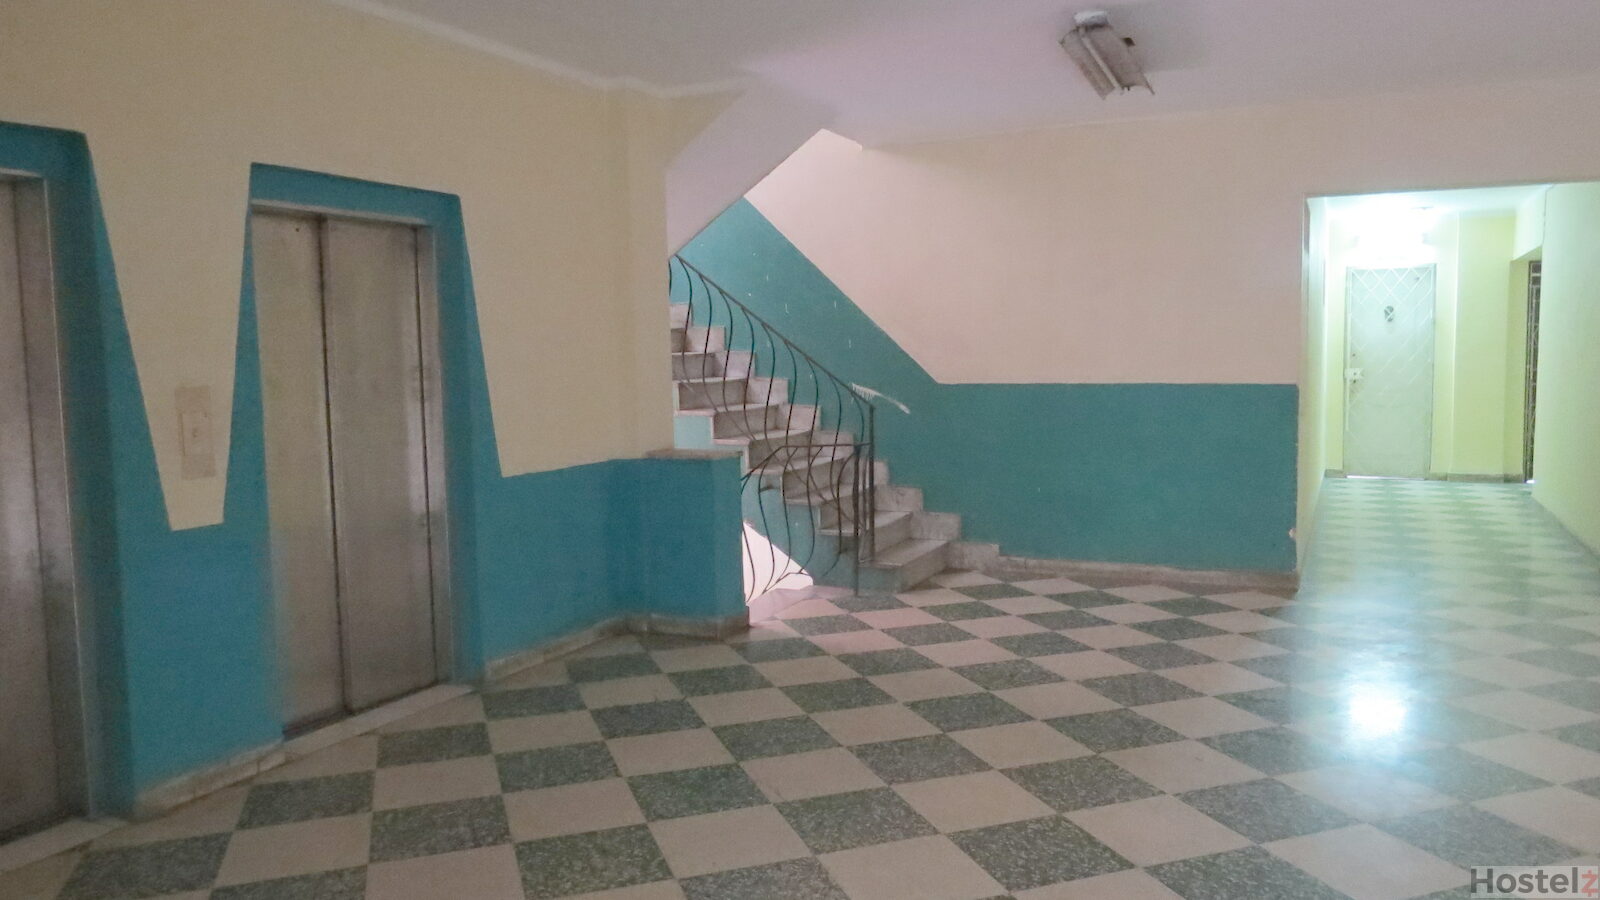 Hallway From Lifts to Hostel Door